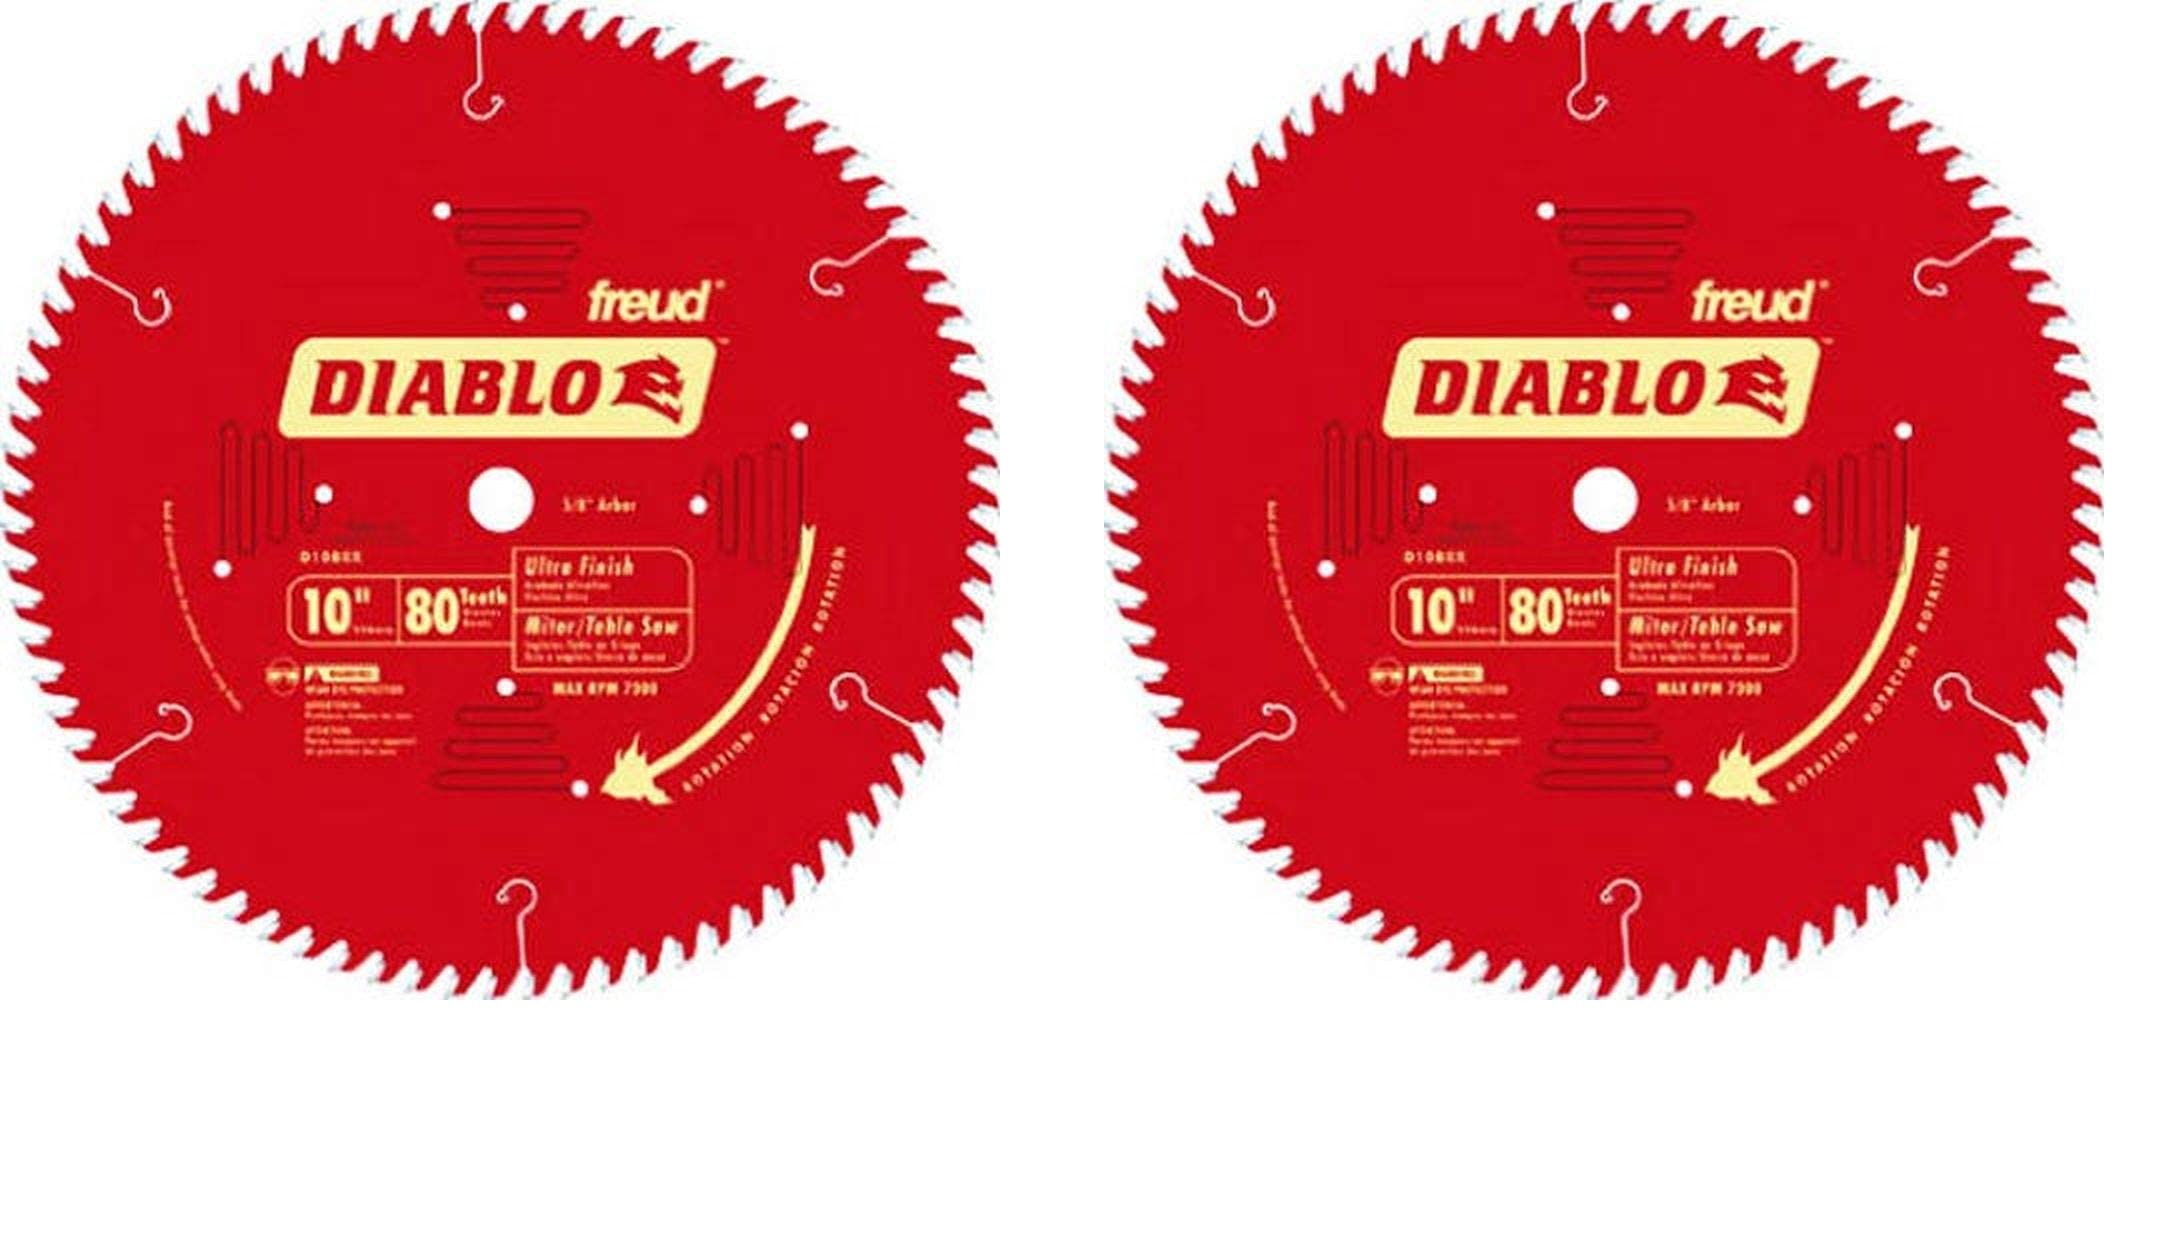 Freud D1080X Diablo 10